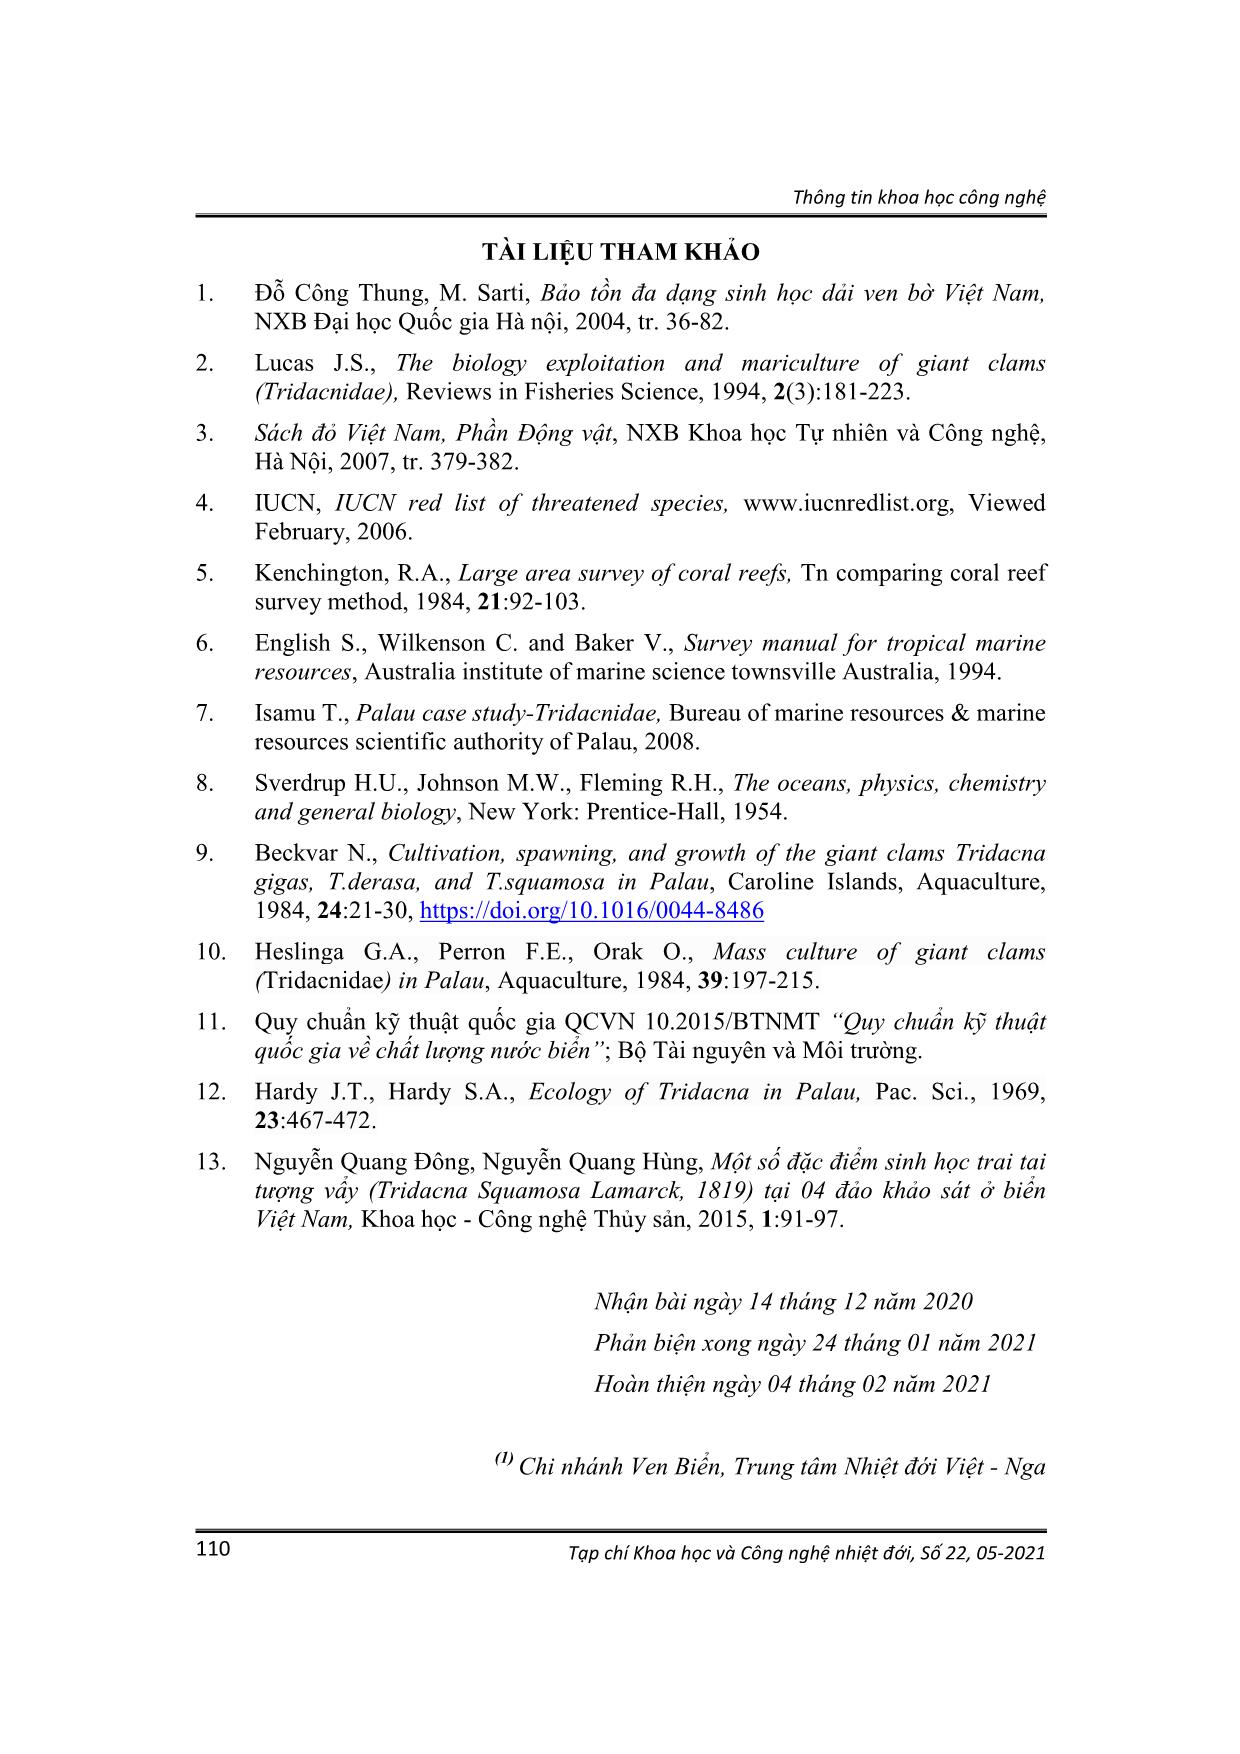 Kết quả khảo sát hiện trạng sự phân bố, mật độ trai tai tượng Tridacna maxima ở vịnh Nha Trang, Khánh Hòa trang 8